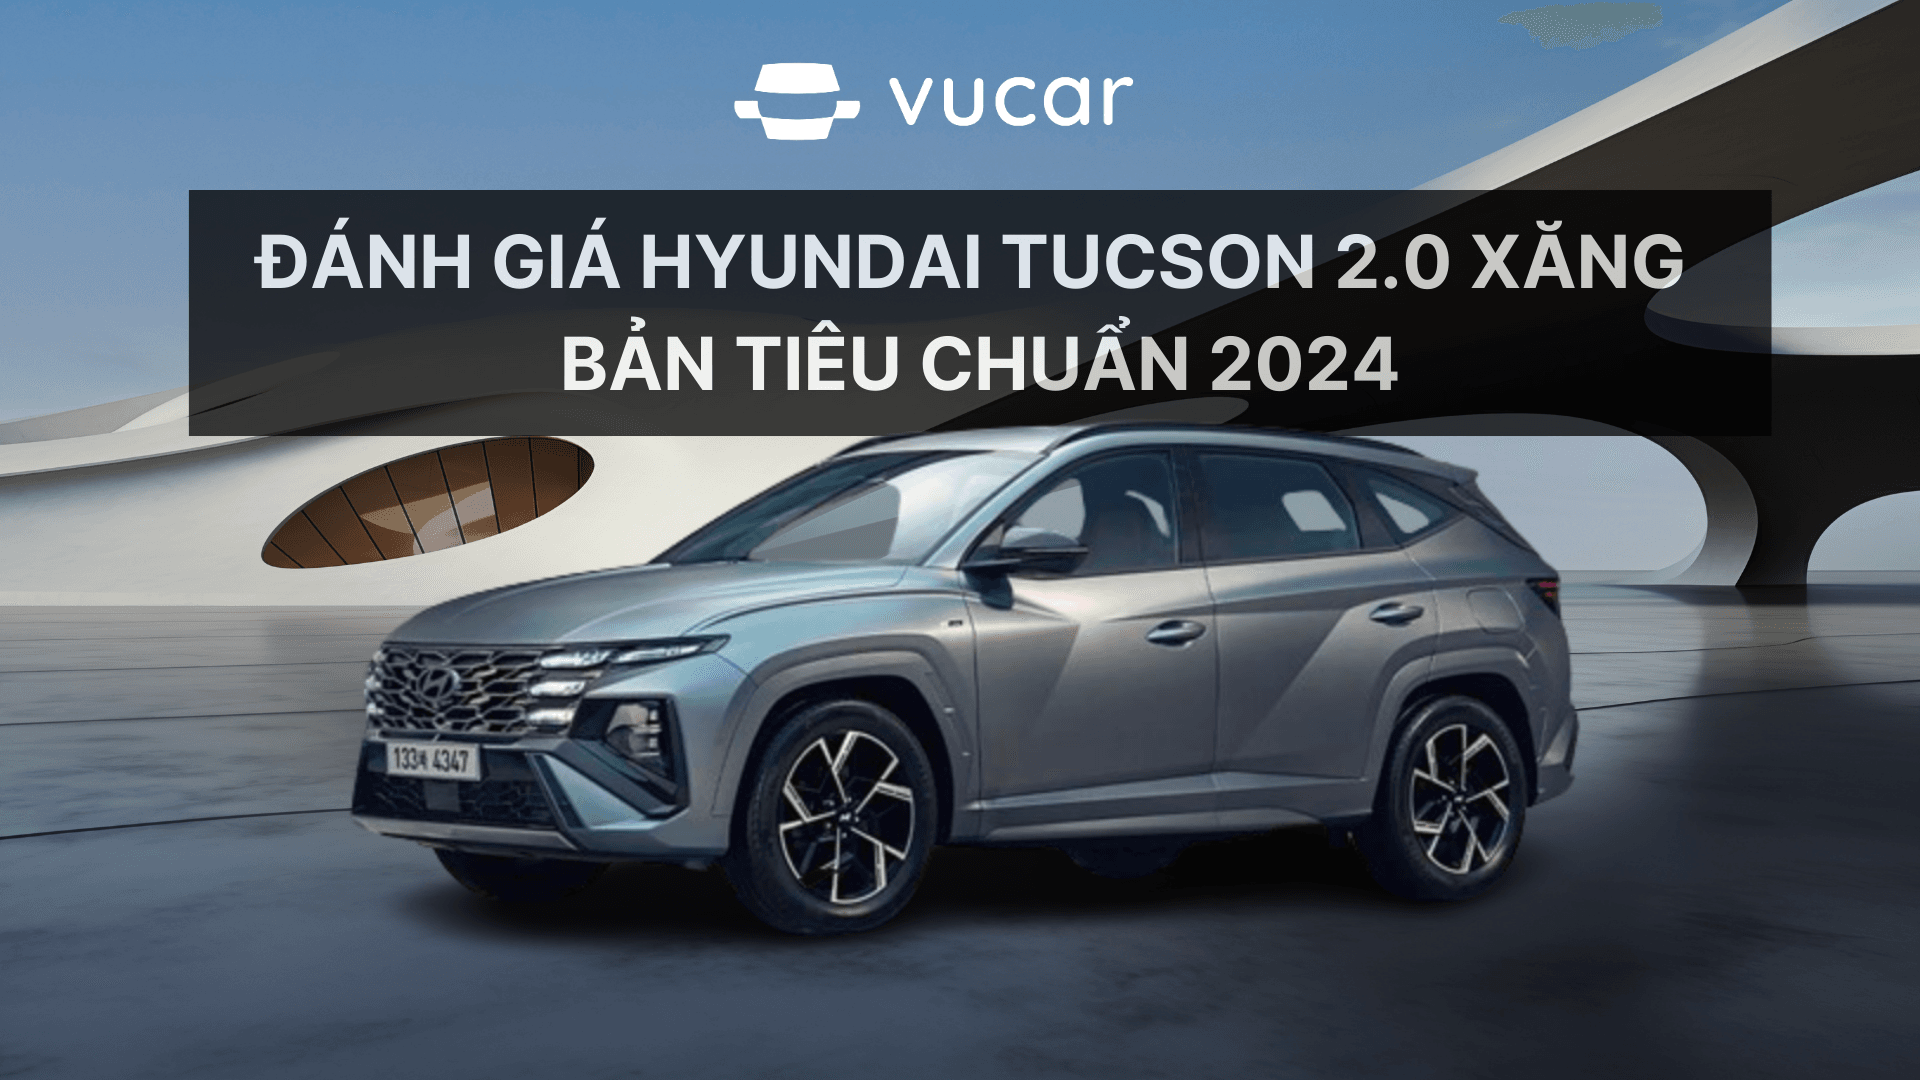 Đánh giá Hyundai Tucson 2.0 xăng  bản tiêu chuẩn 2024